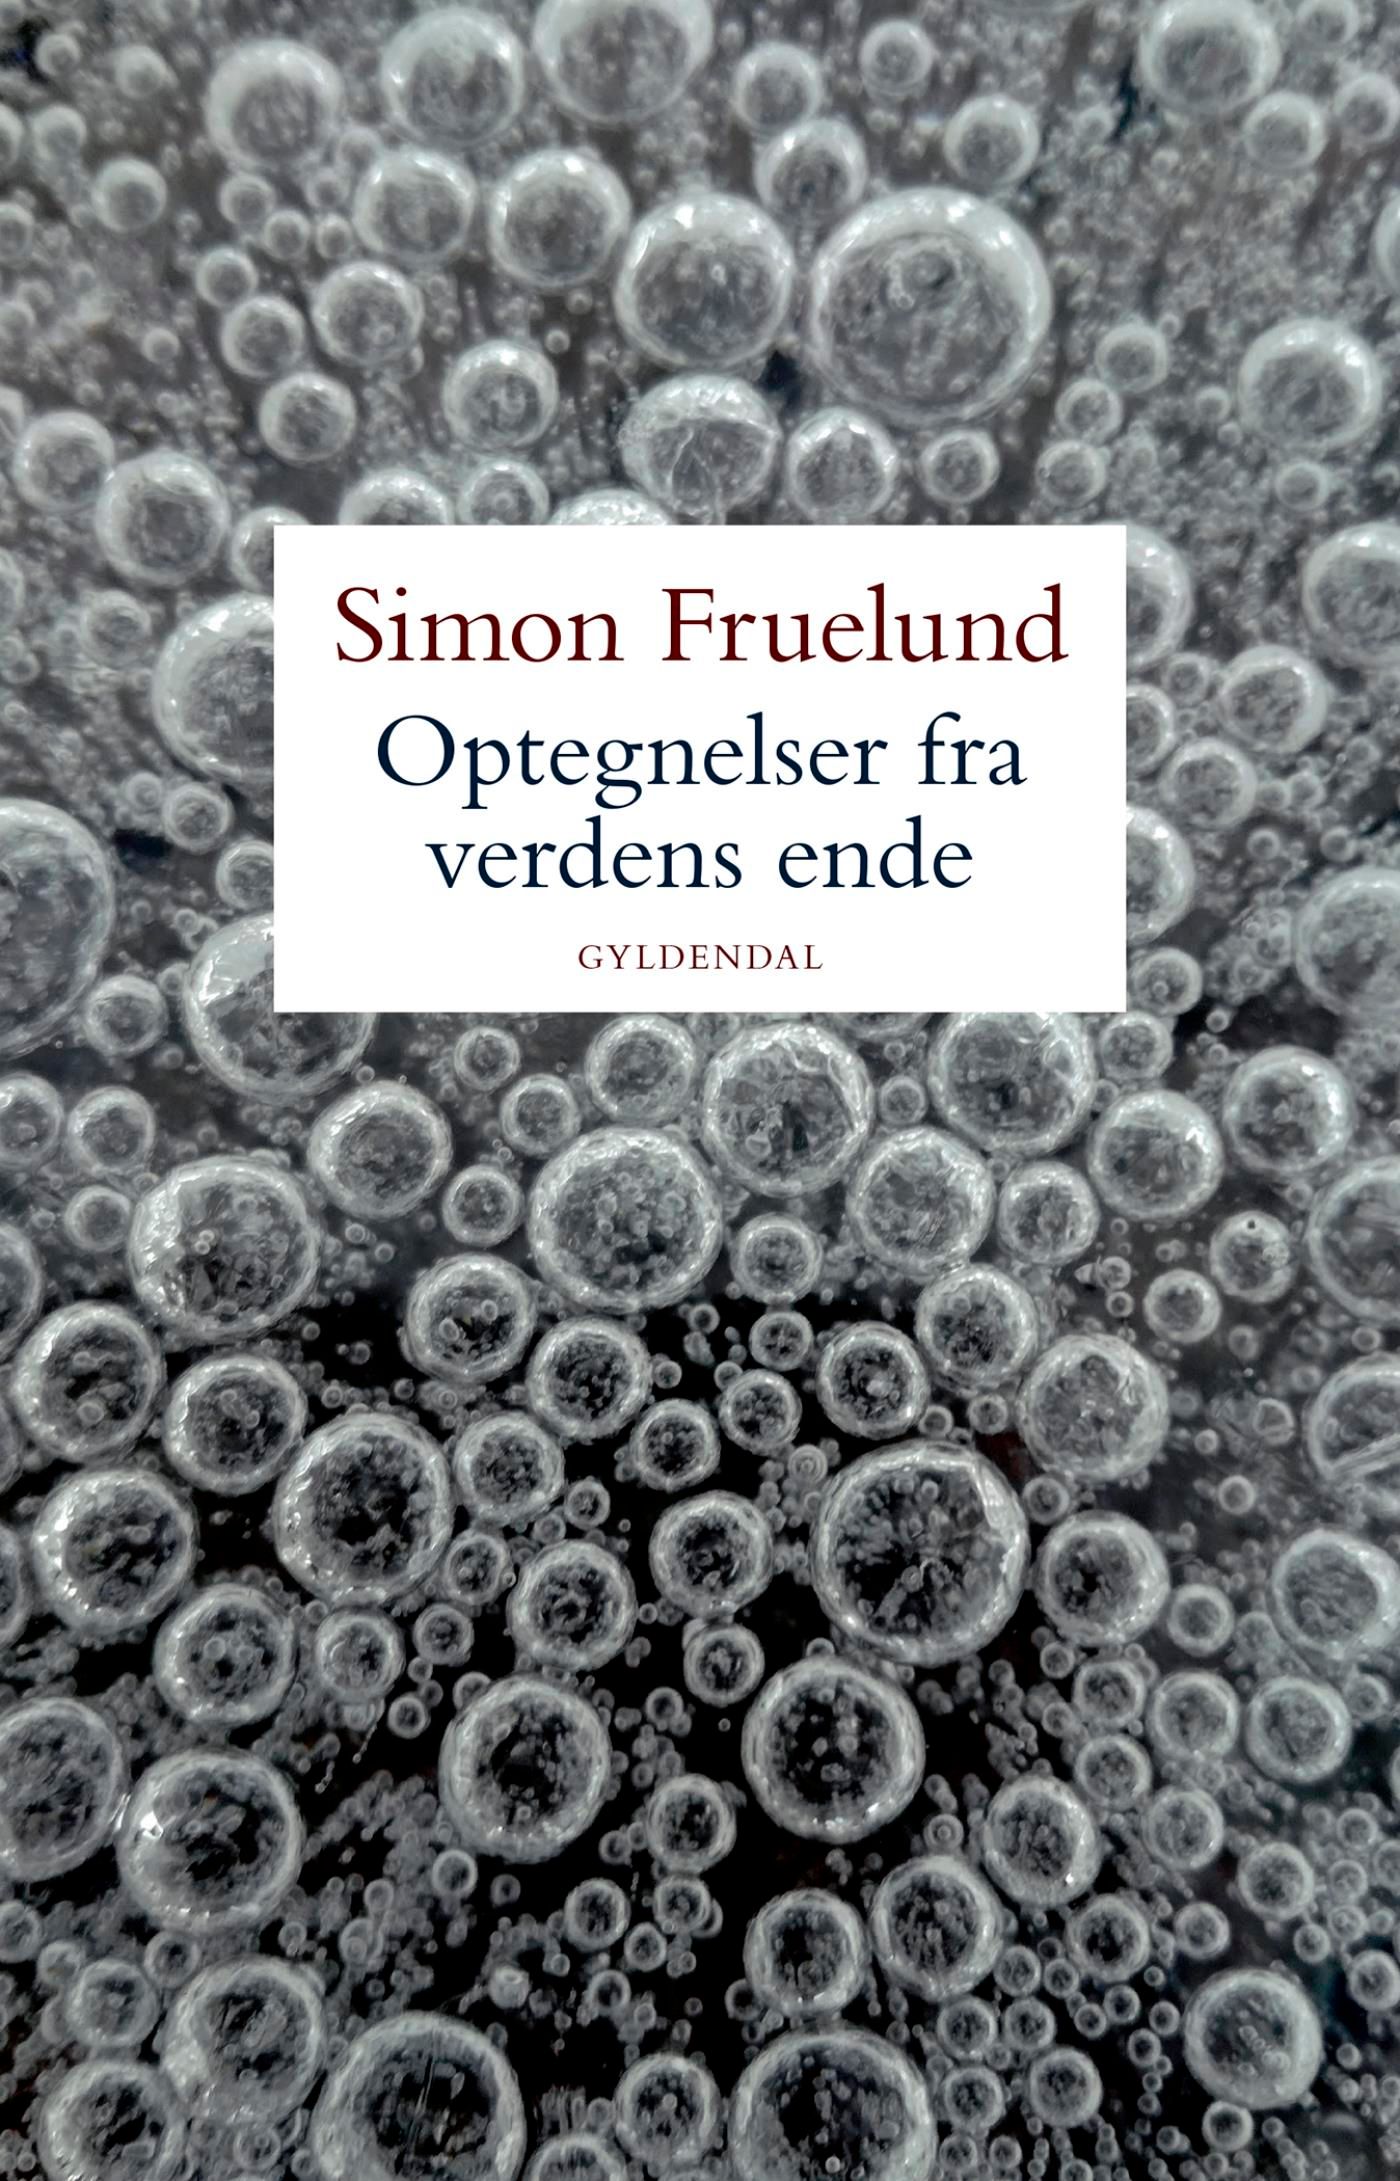 Optegnelser fra verdens ende, e-bok av Simon Fruelund